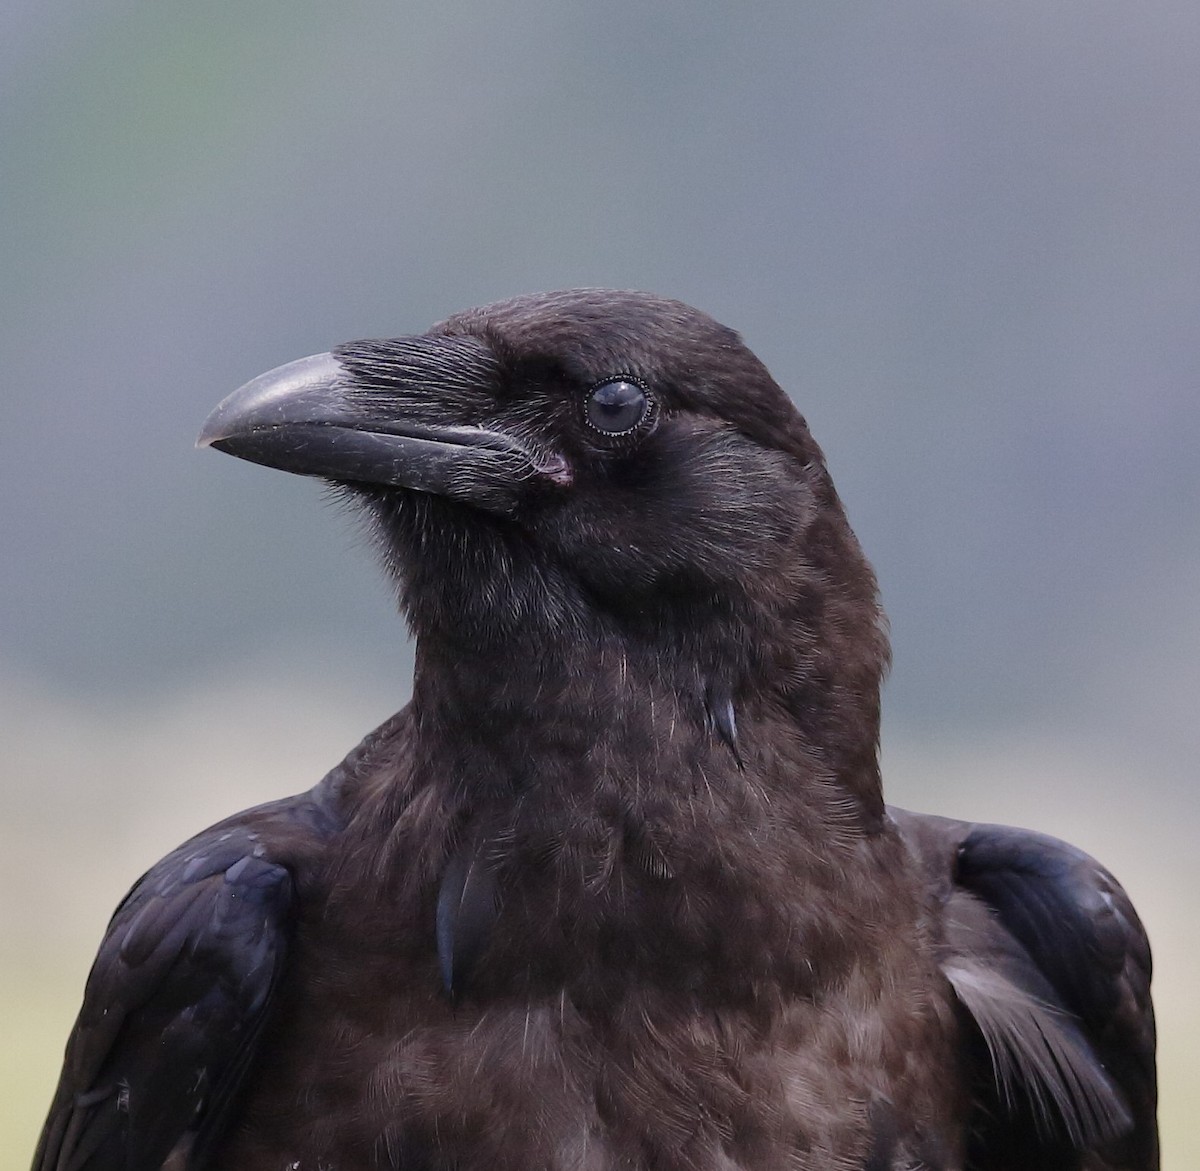 Common Raven - Matthew Bowman